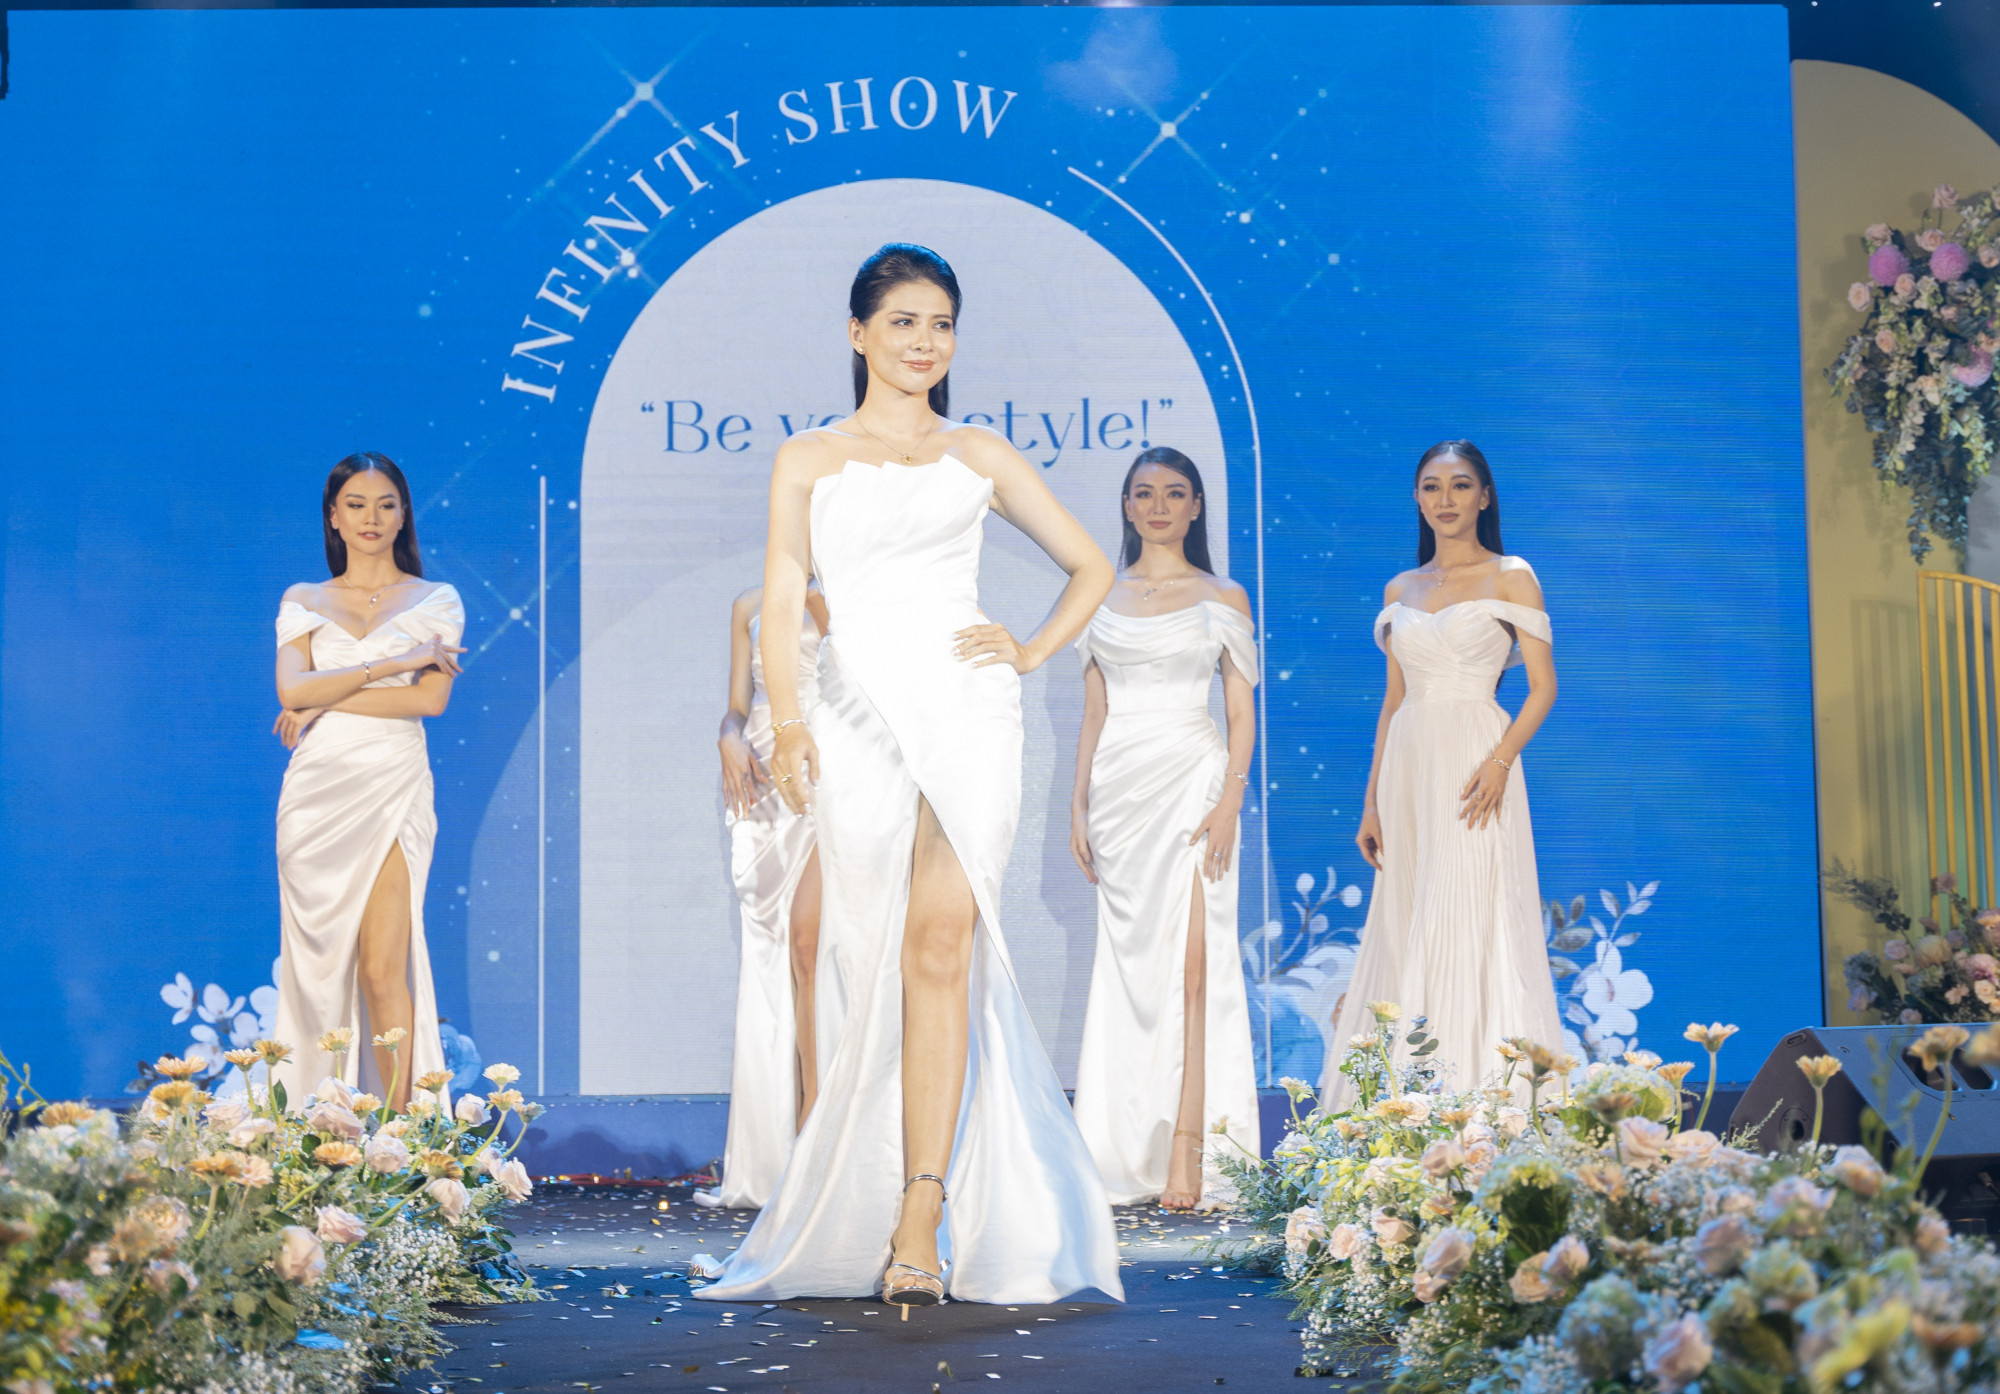 Trong show diễn, các người đẹp trình diễn những chiếc váy dạ hội với 3 tông màu: trắng, xanh, đen làm chủ đạo. 